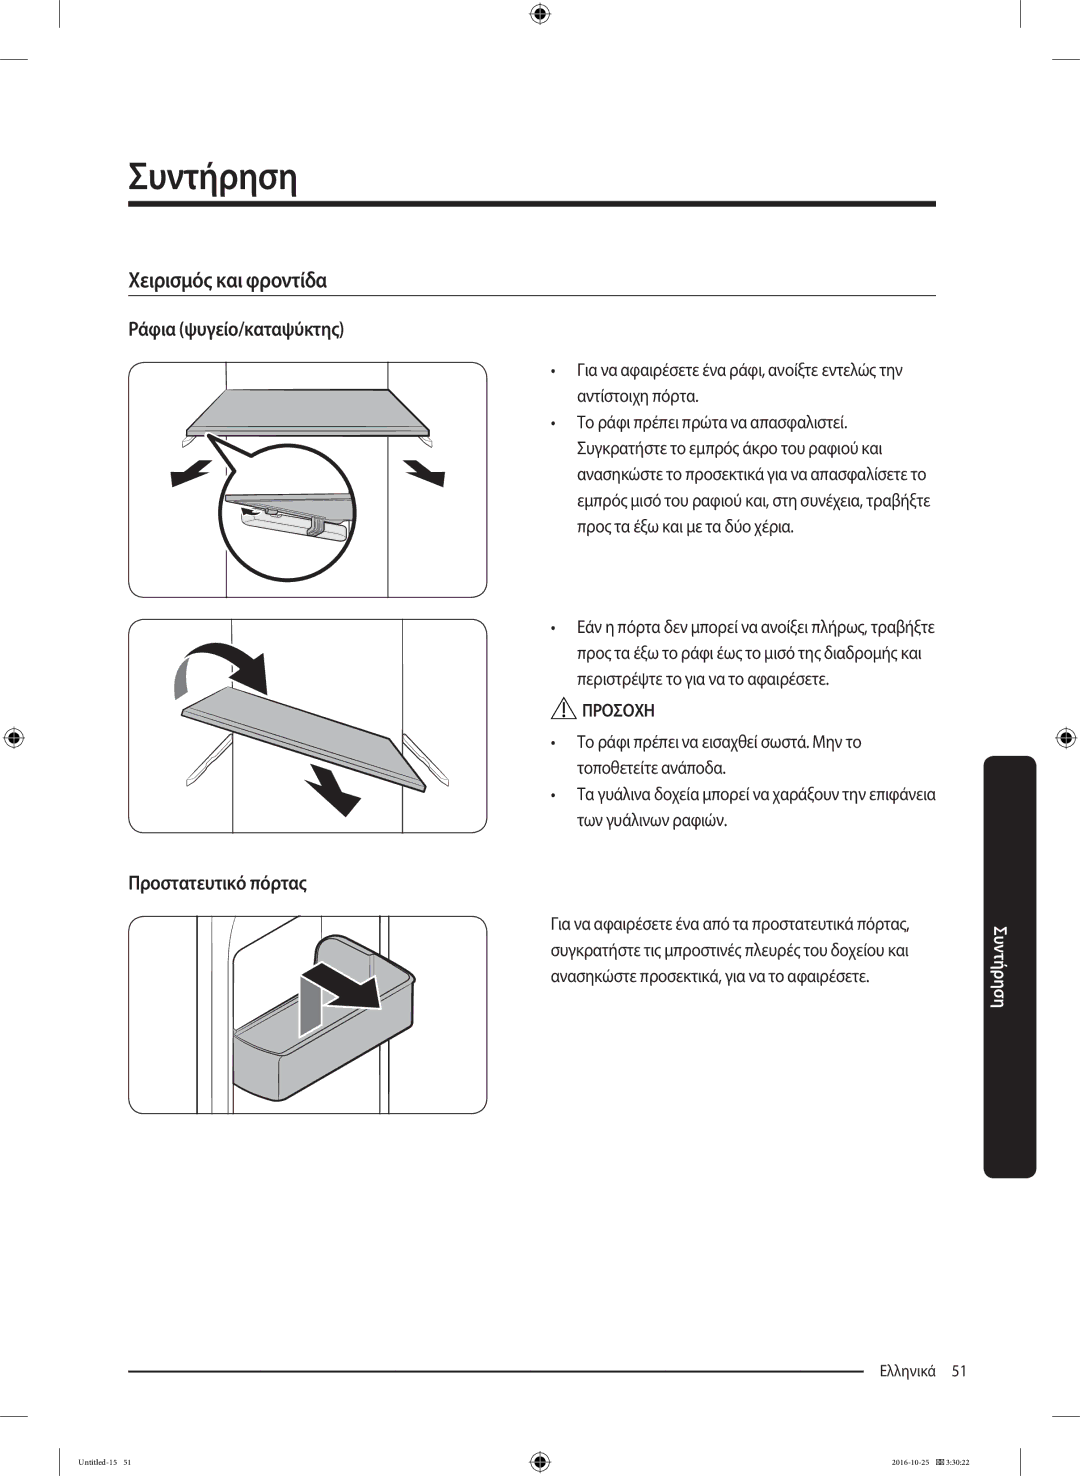 Samsung RS53K4400SA/EF manual Ράφια ψυγείο/καταψύκτης, Προστατευτικό πόρτας 